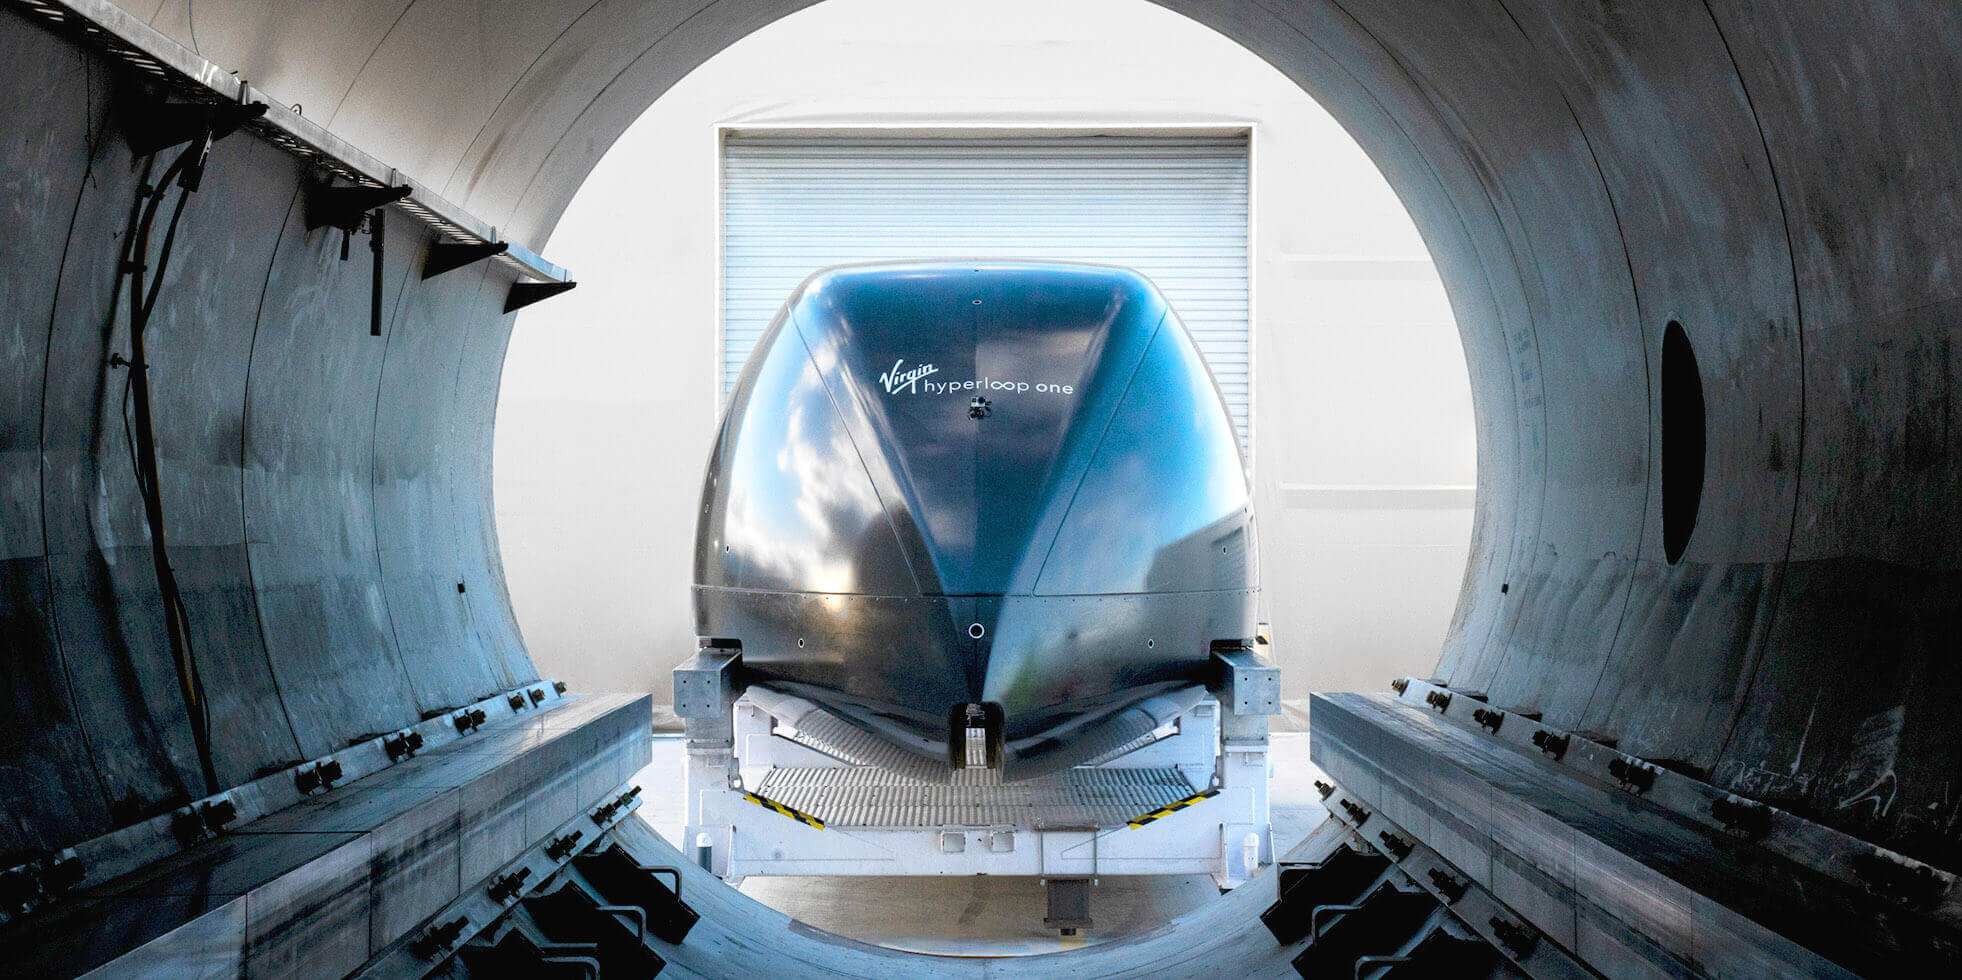 عندما نتلقى النقل في المستقبل Hyperloop و مدى السرعة التي يمكن ان تتحرك ؟ 